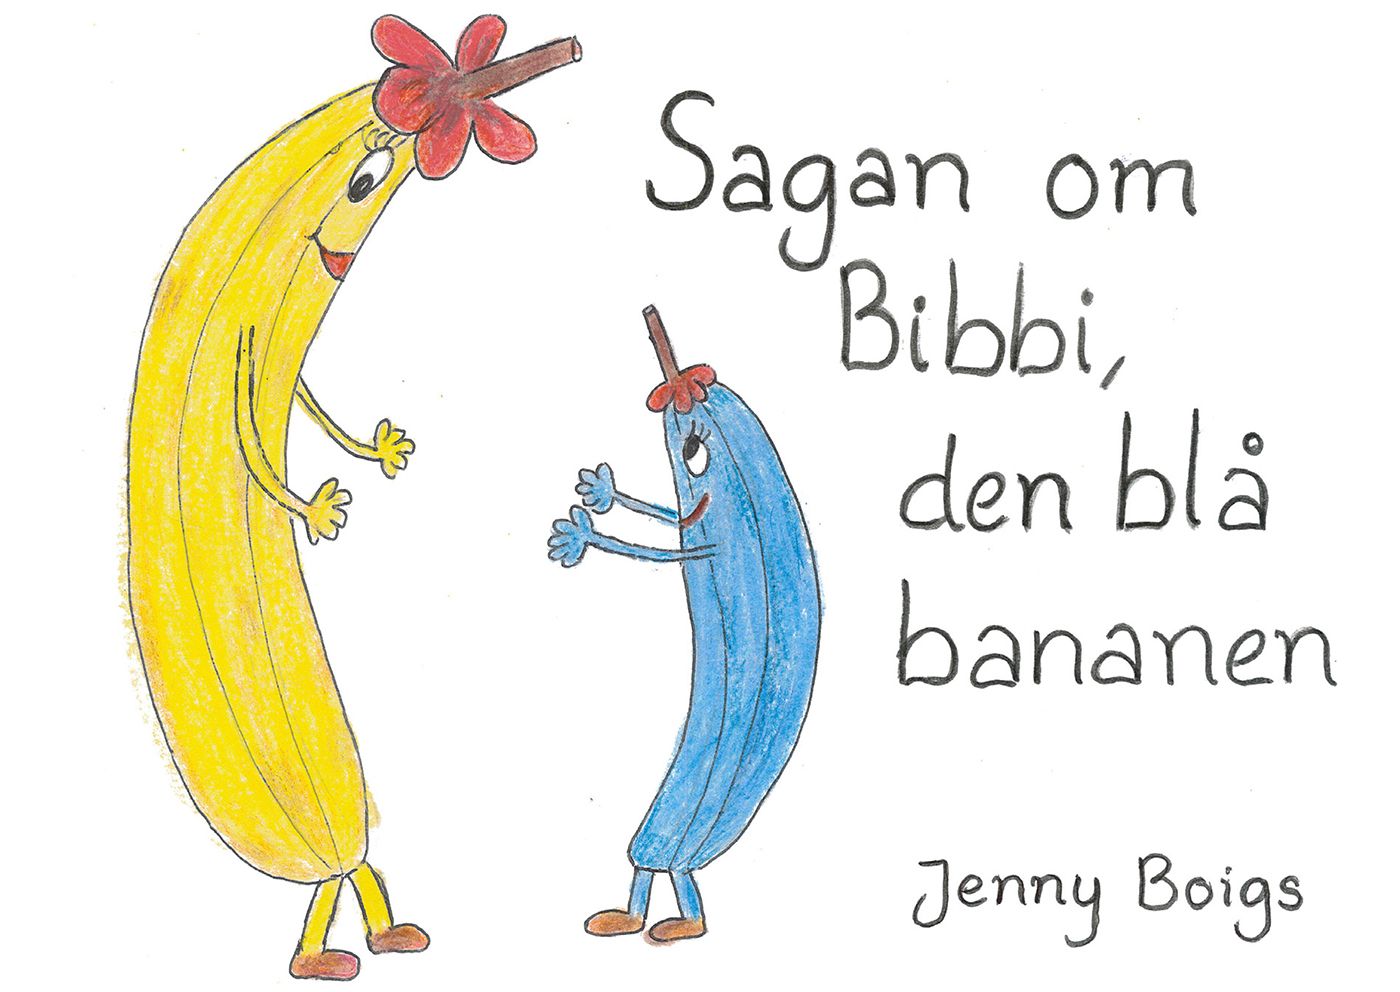 Sagan om Bibbi, den blå bananen, eBook by Jenny Boigs